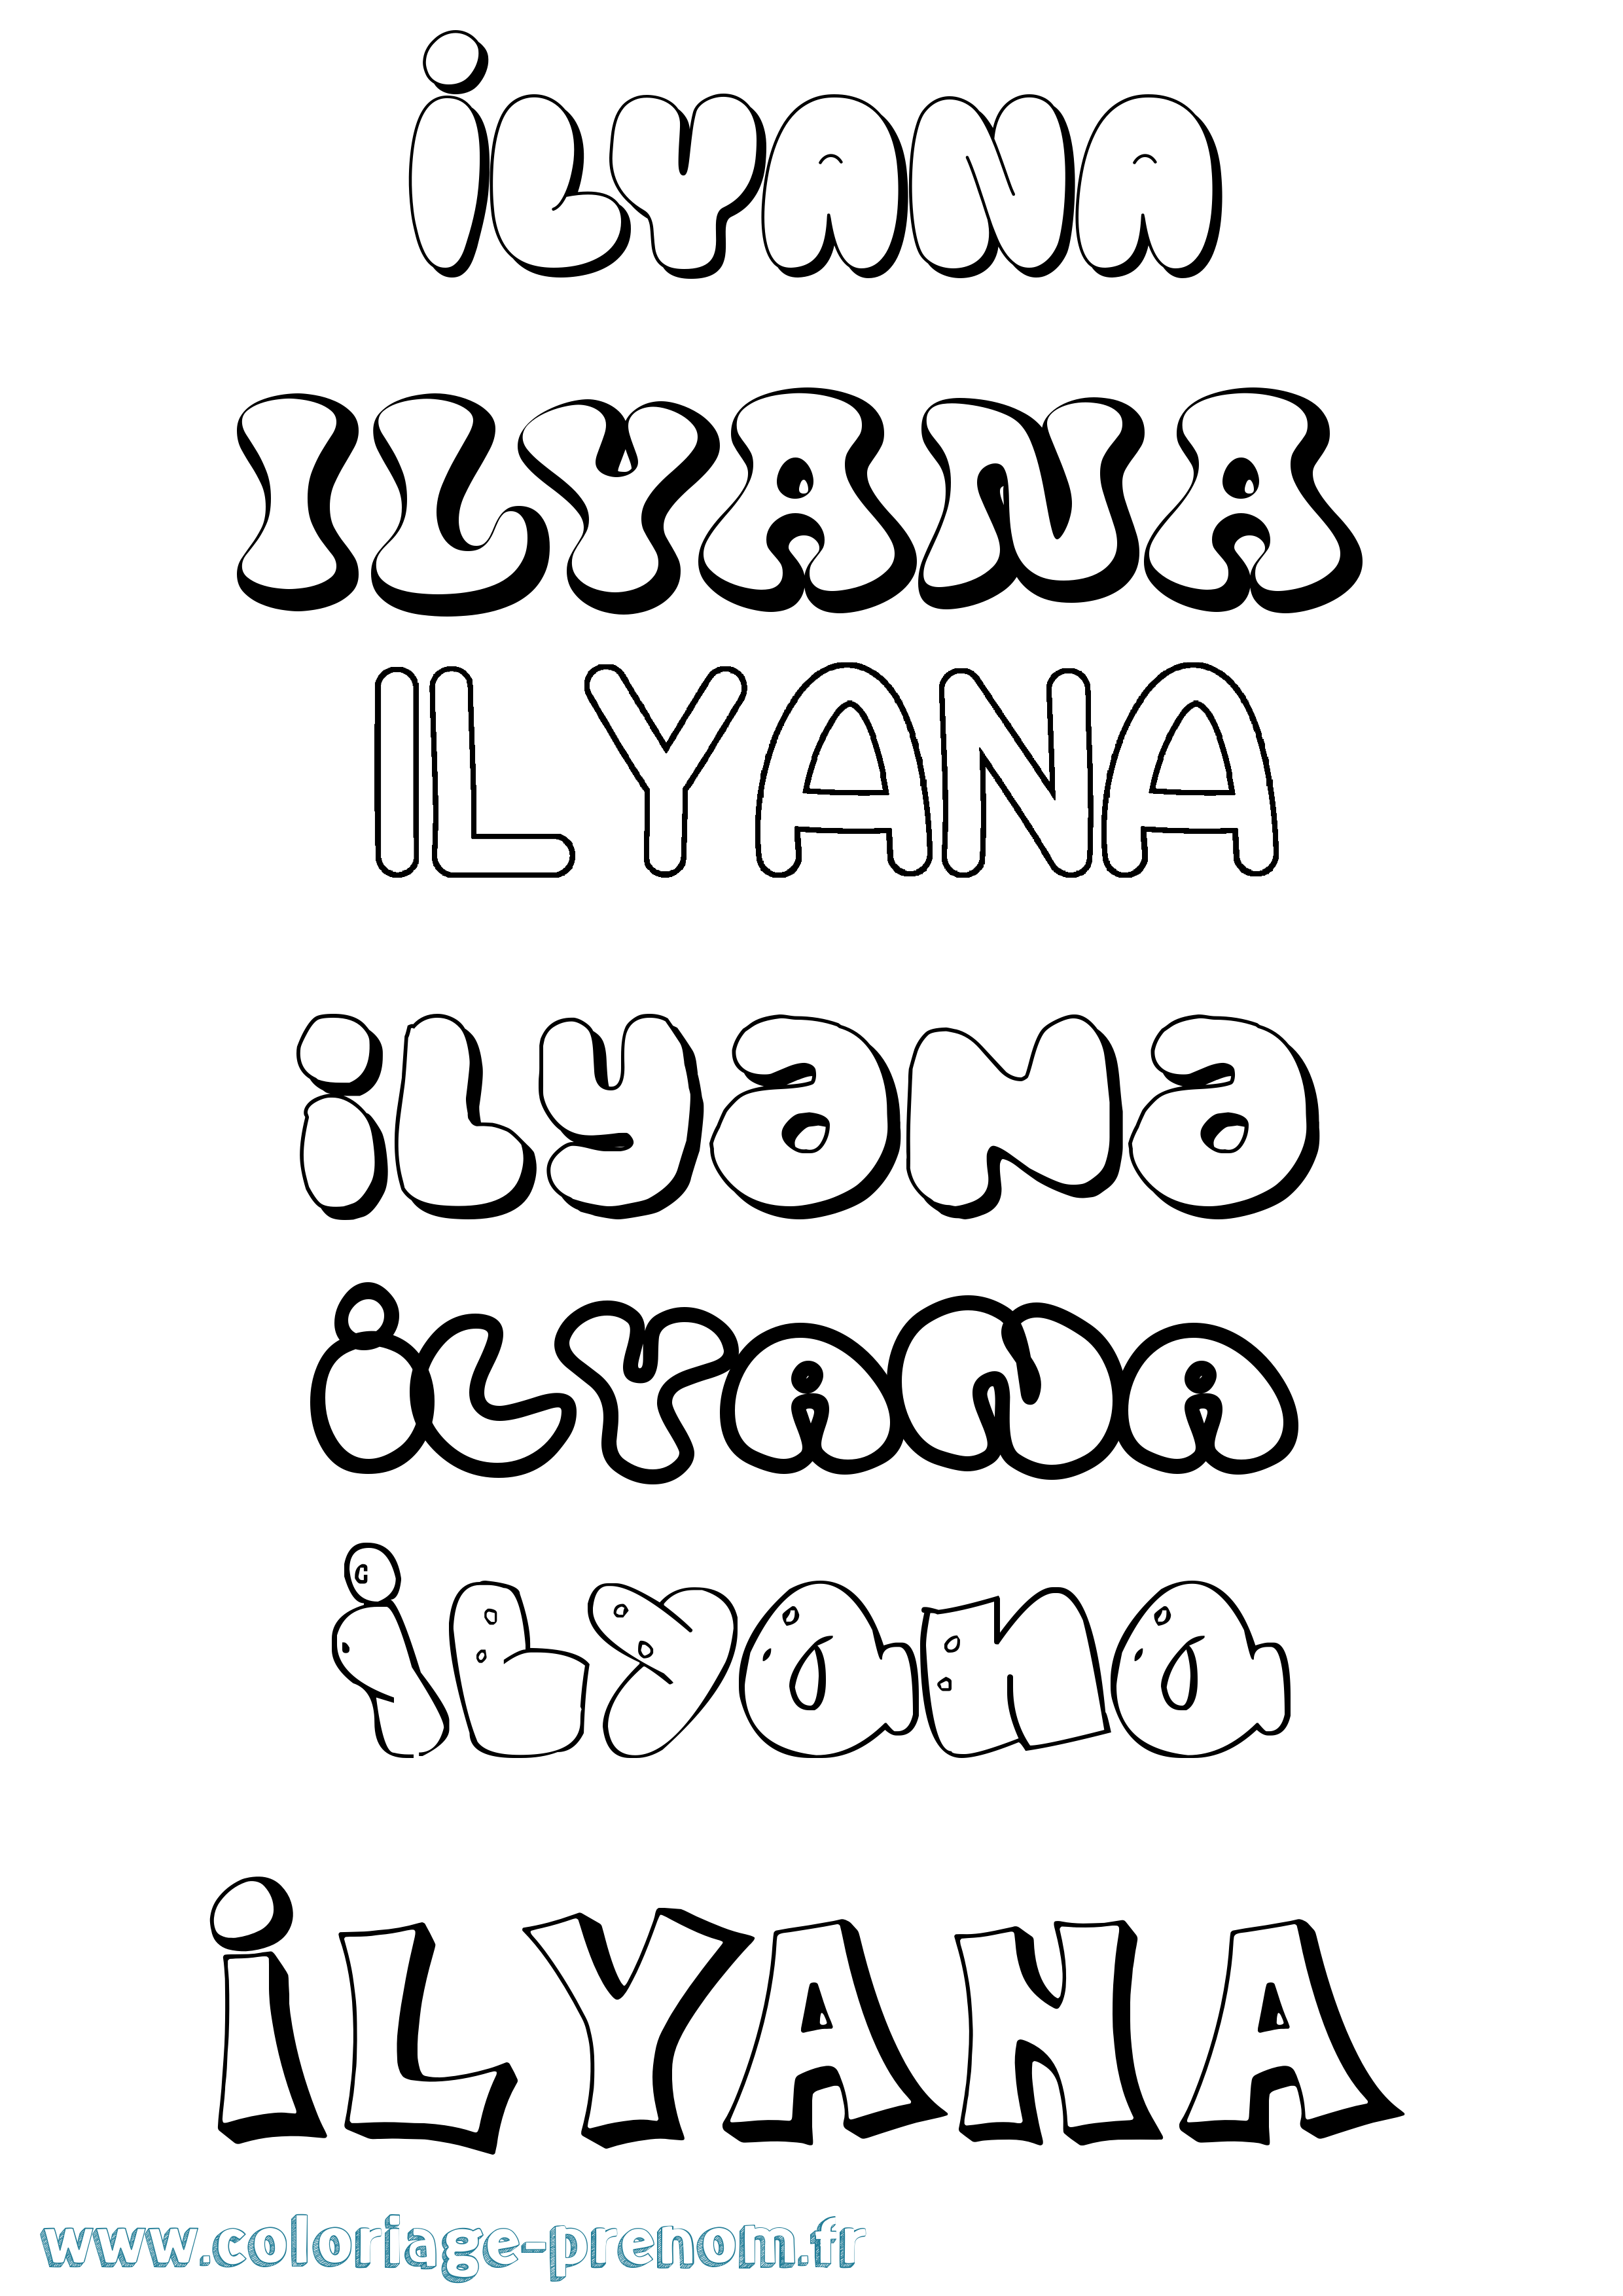 Coloriage prénom Ilyana Bubble